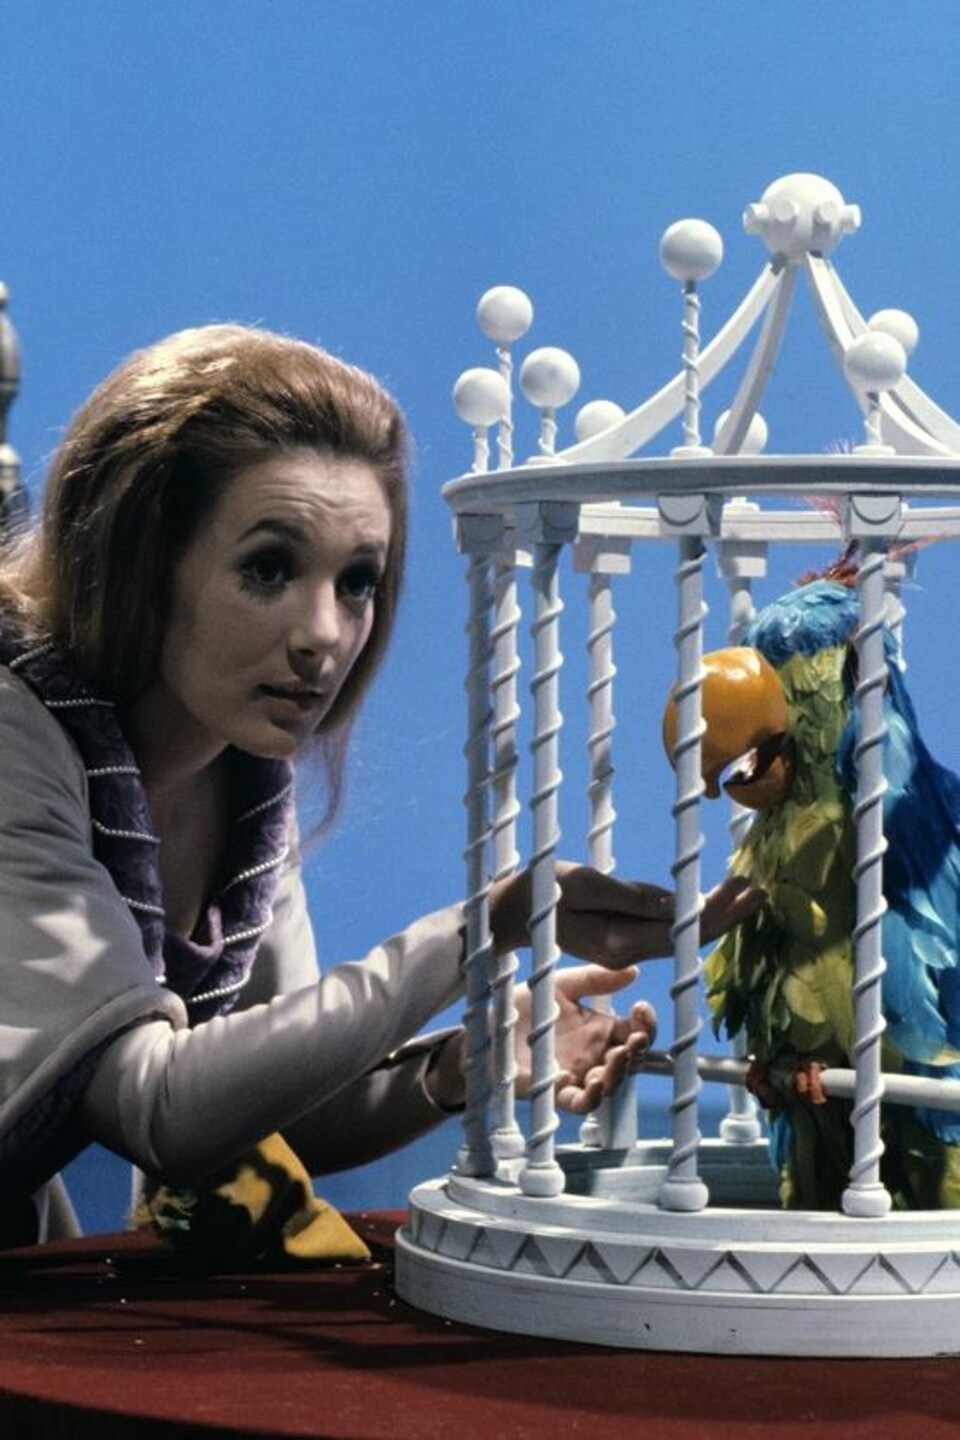 La princesse (Marie-Josée Longchamps) donnant des grains à un perroquet dans une cage près du trône du roi.